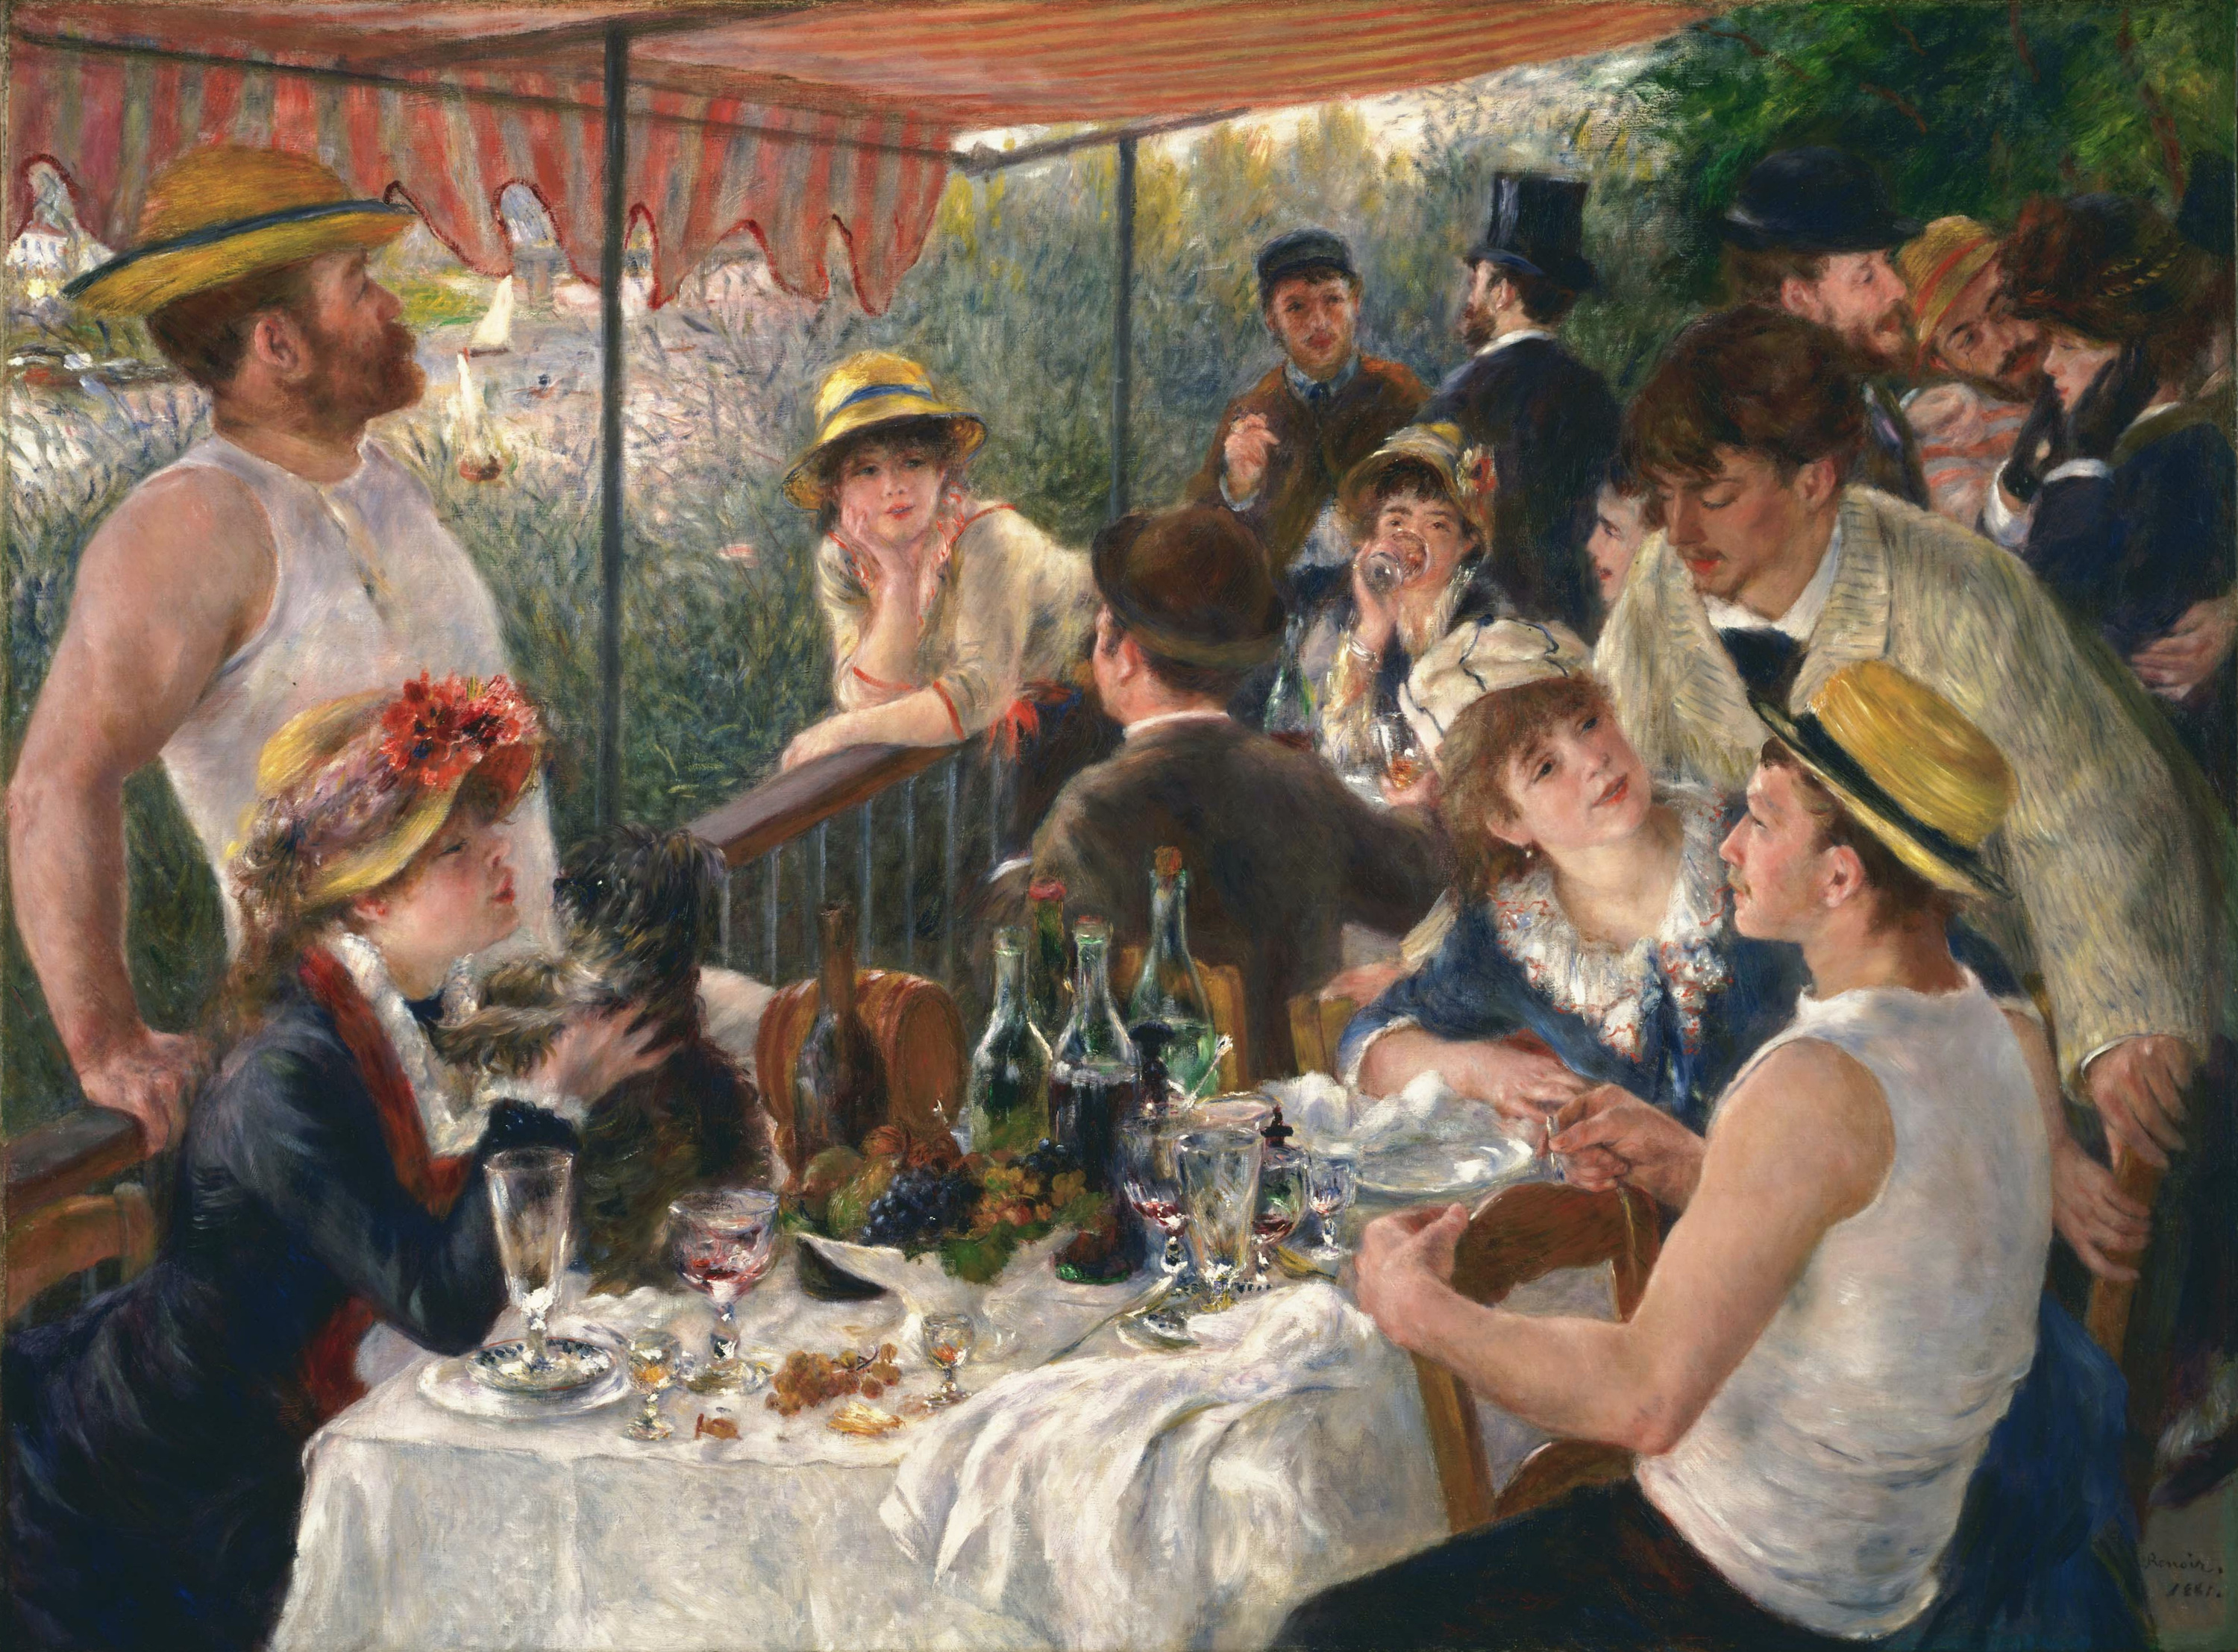 船上的午宴 by Pierre-Auguste Renoir - 1880 - 1881 年 - 69.13 x 51.25 英寸 